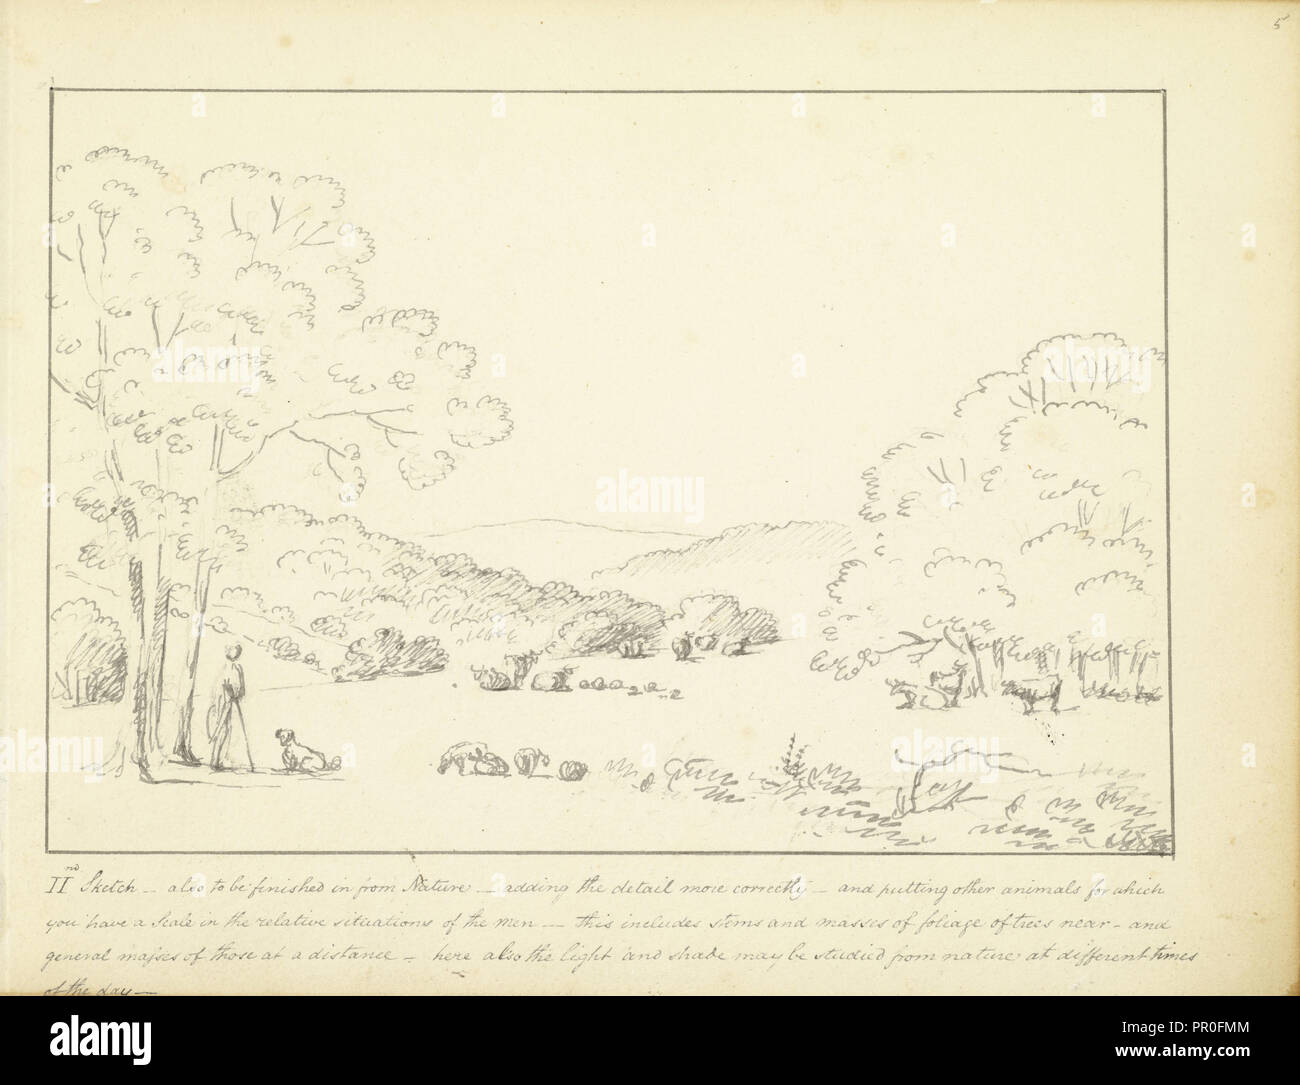 II Skizze - auch in der Natur, ein paar Hinweise über Landschaft, Skizzen, kann beendet werden. 1810, Humphry Repton Architektur Stockfoto